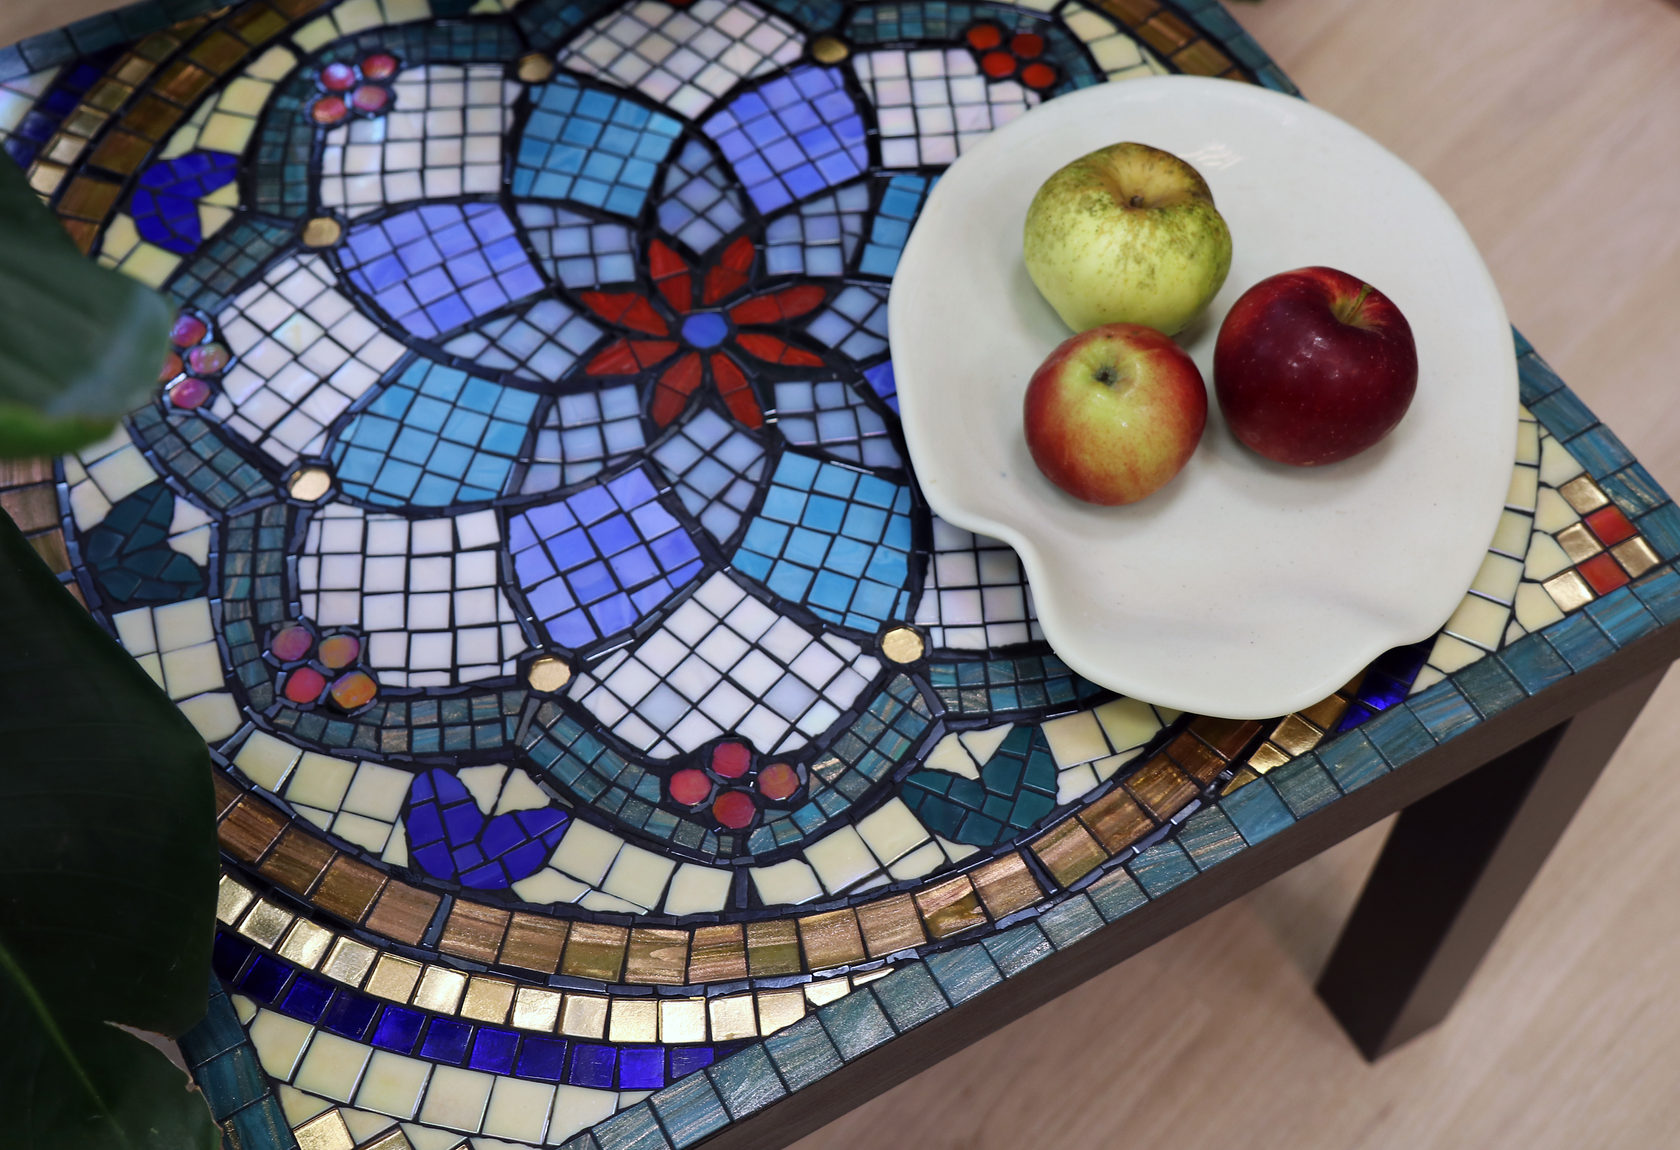 Обеденный стол с мозаичной столешницей